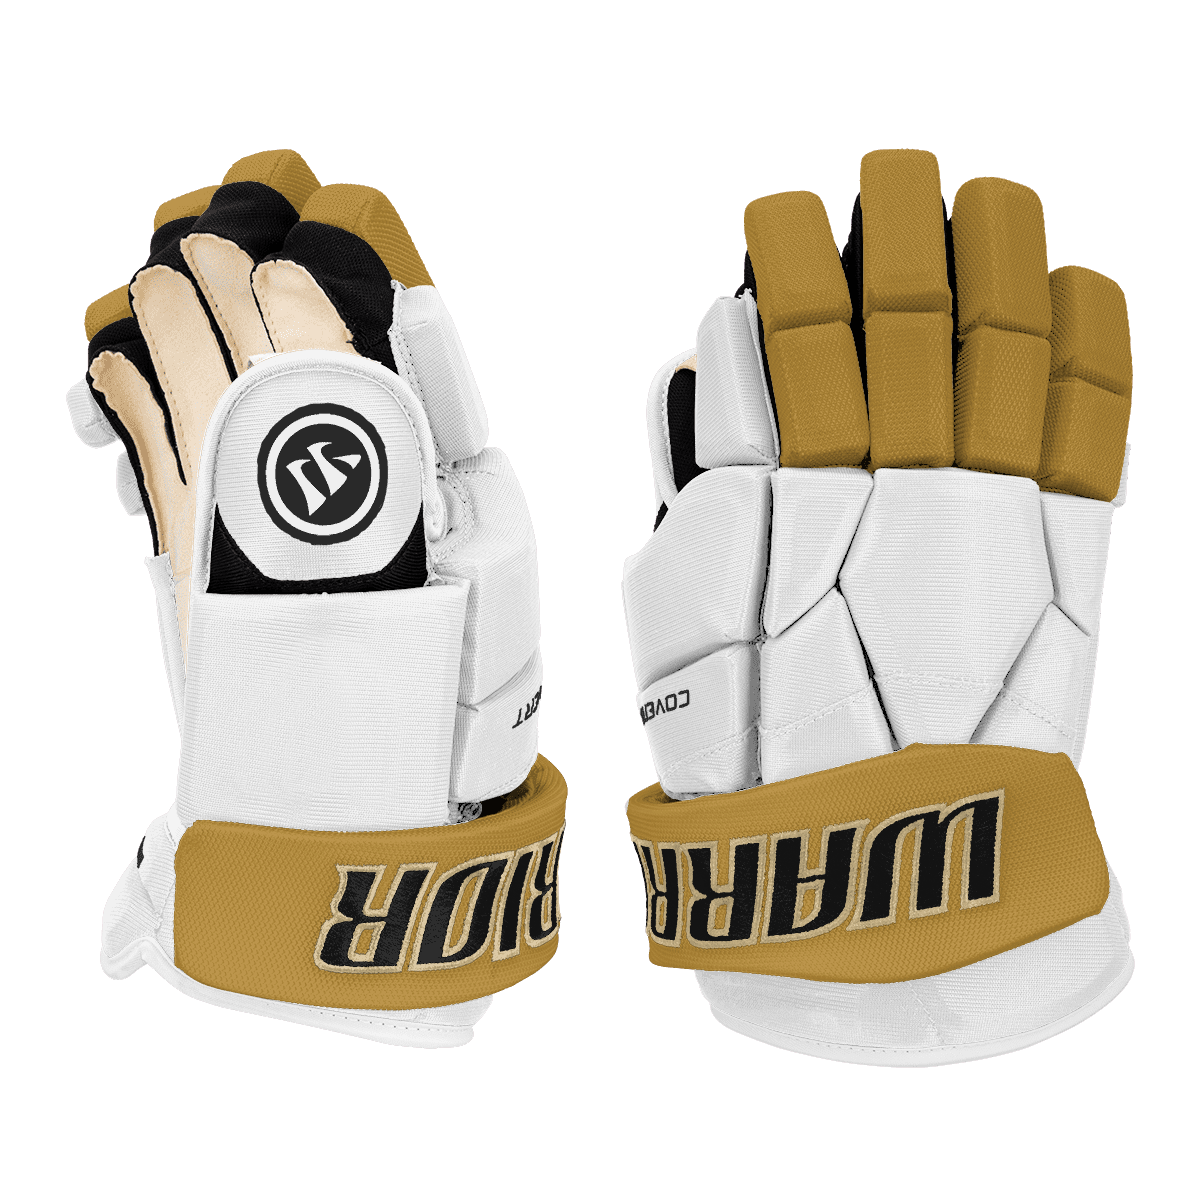 Warrior Covert Pro Hockey Gloves - Custom Design Vegas Inspiration